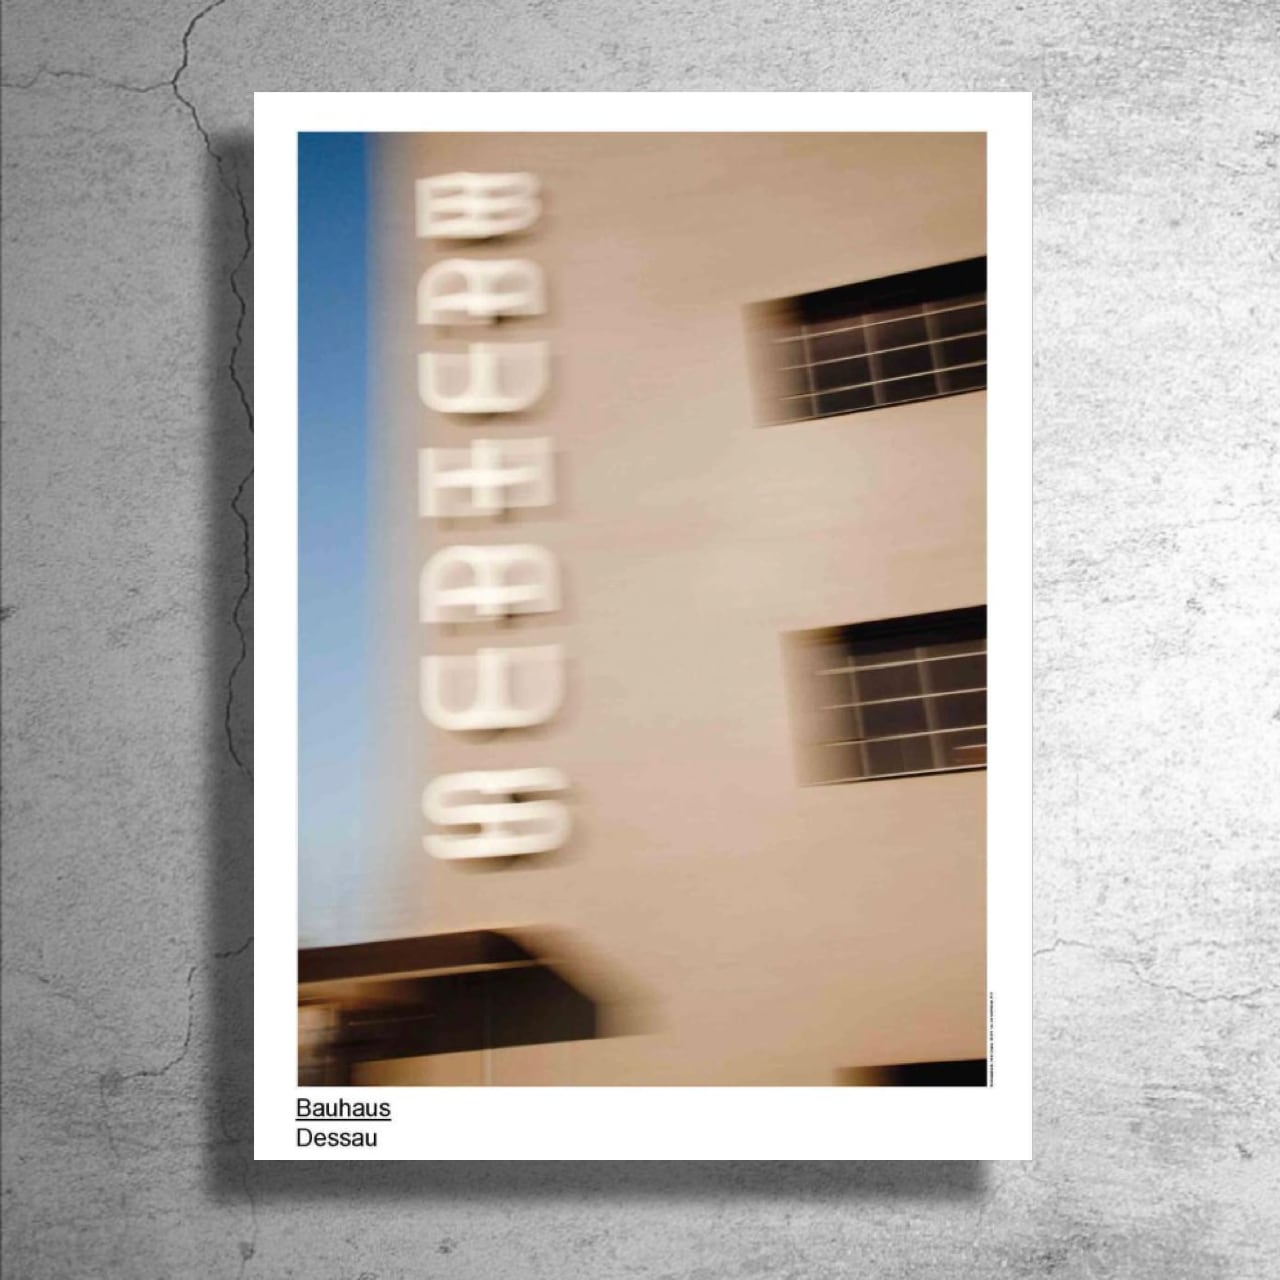 マニア必見！BAUHAUS系建築『ファグス工場』1998年ドイツでの展示ポスター